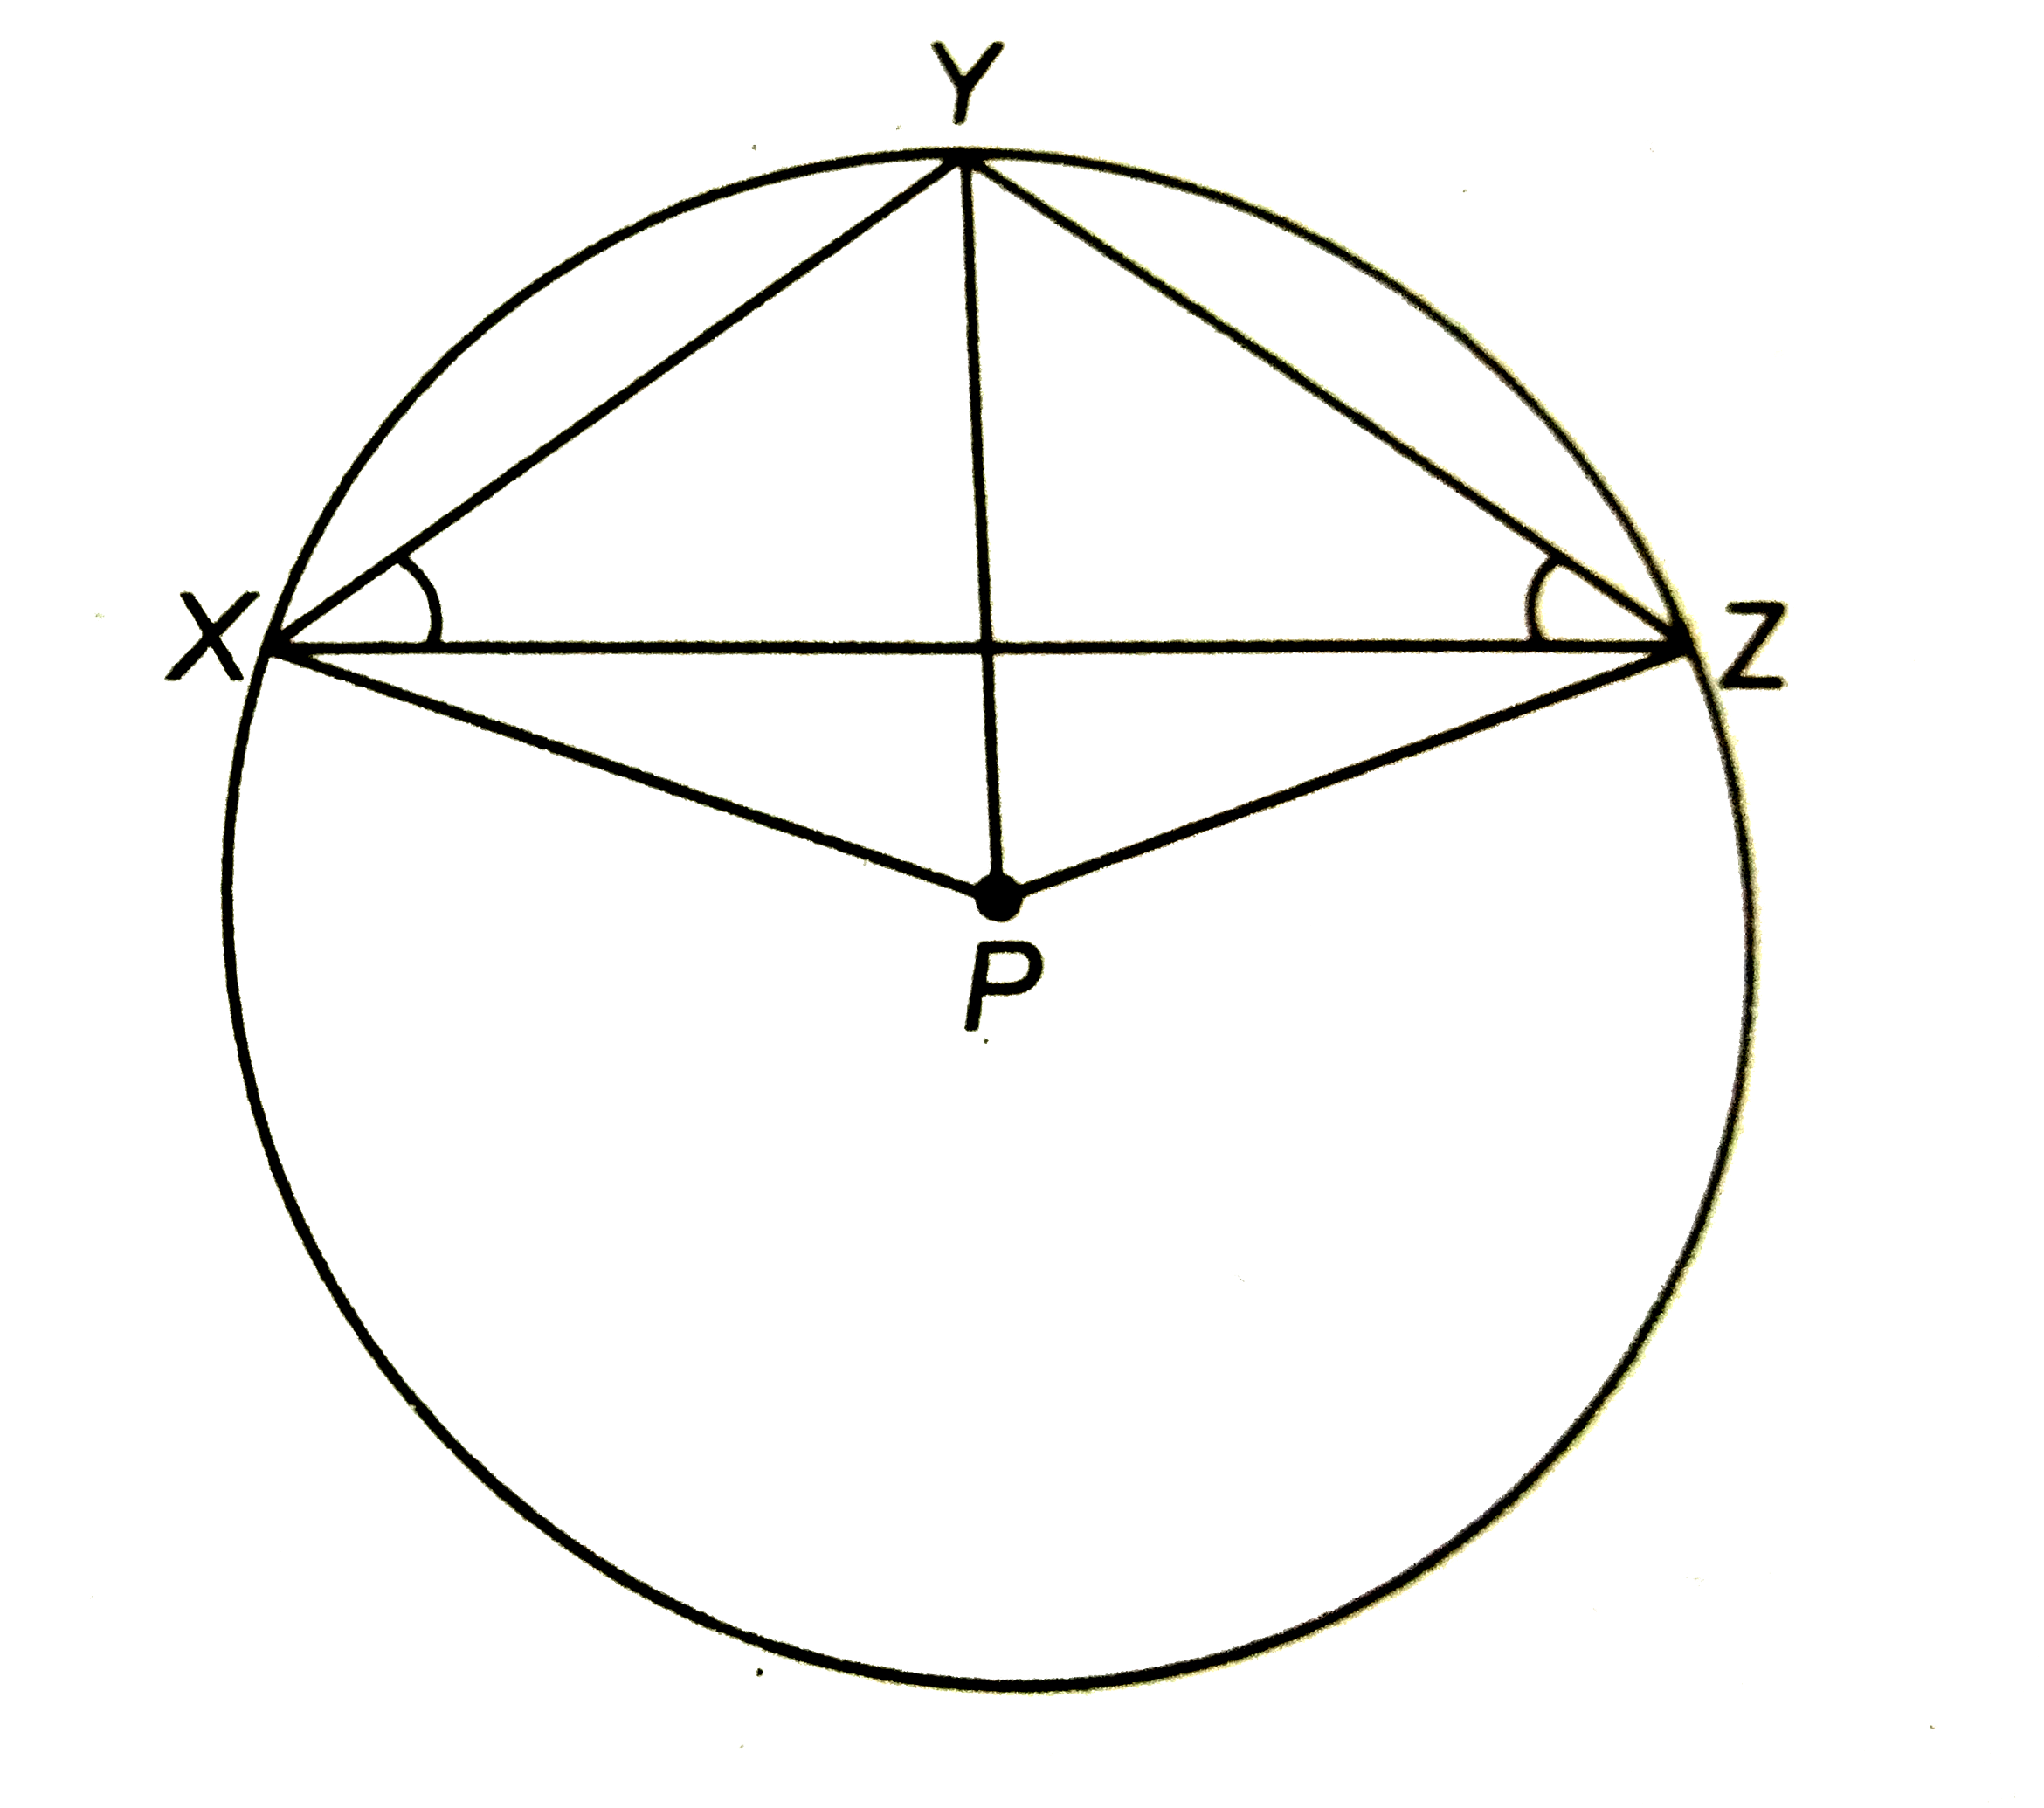 संलग्न चित्र में, P वृत्त का केन्द्र है | सिद्ध कीजिए कि angleXPZ=2(angleXZY+angleYXZ).